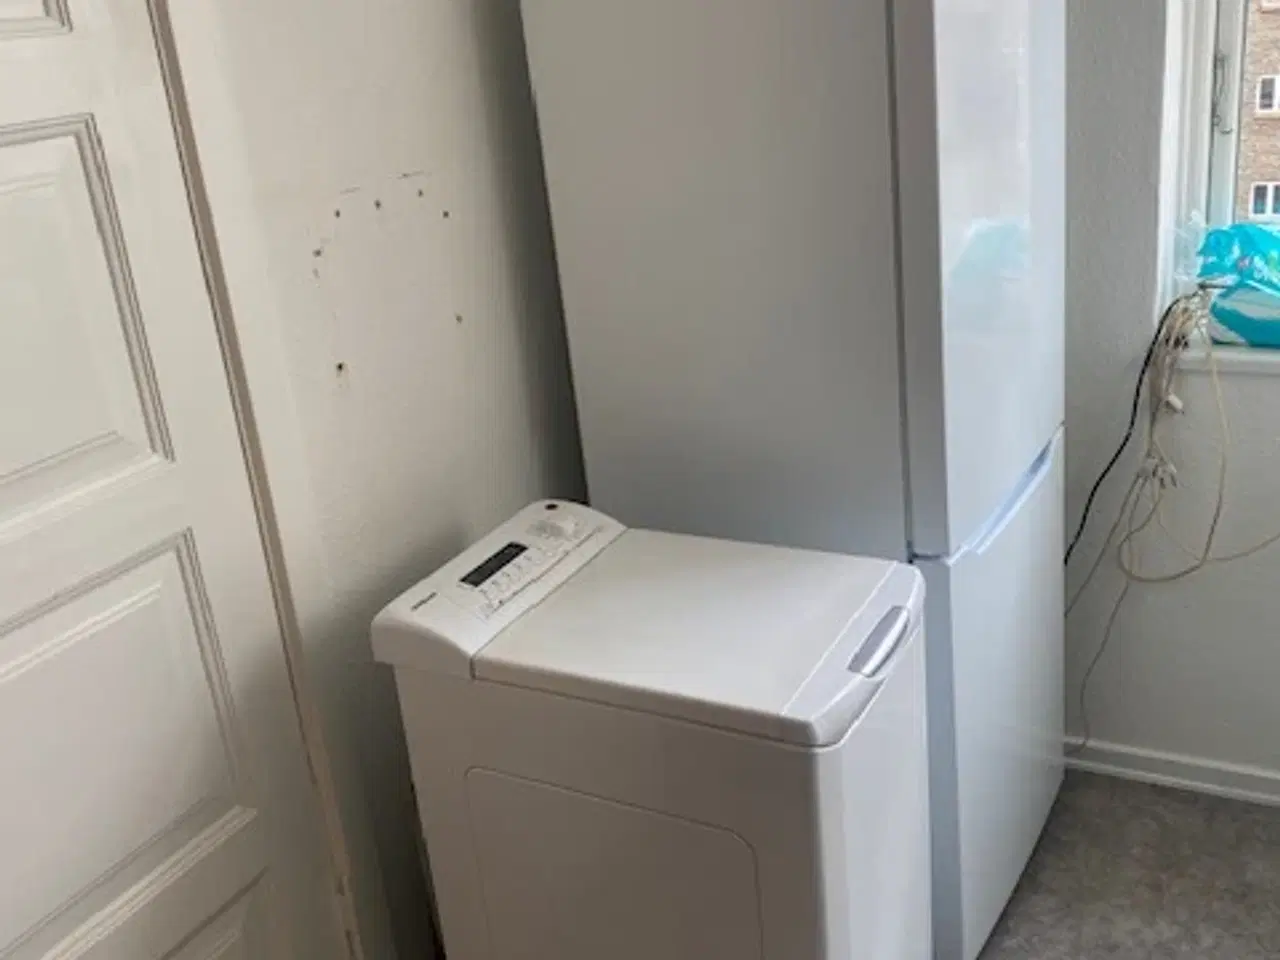 Billede 1 - Lille vaskemaskine fra Hoover